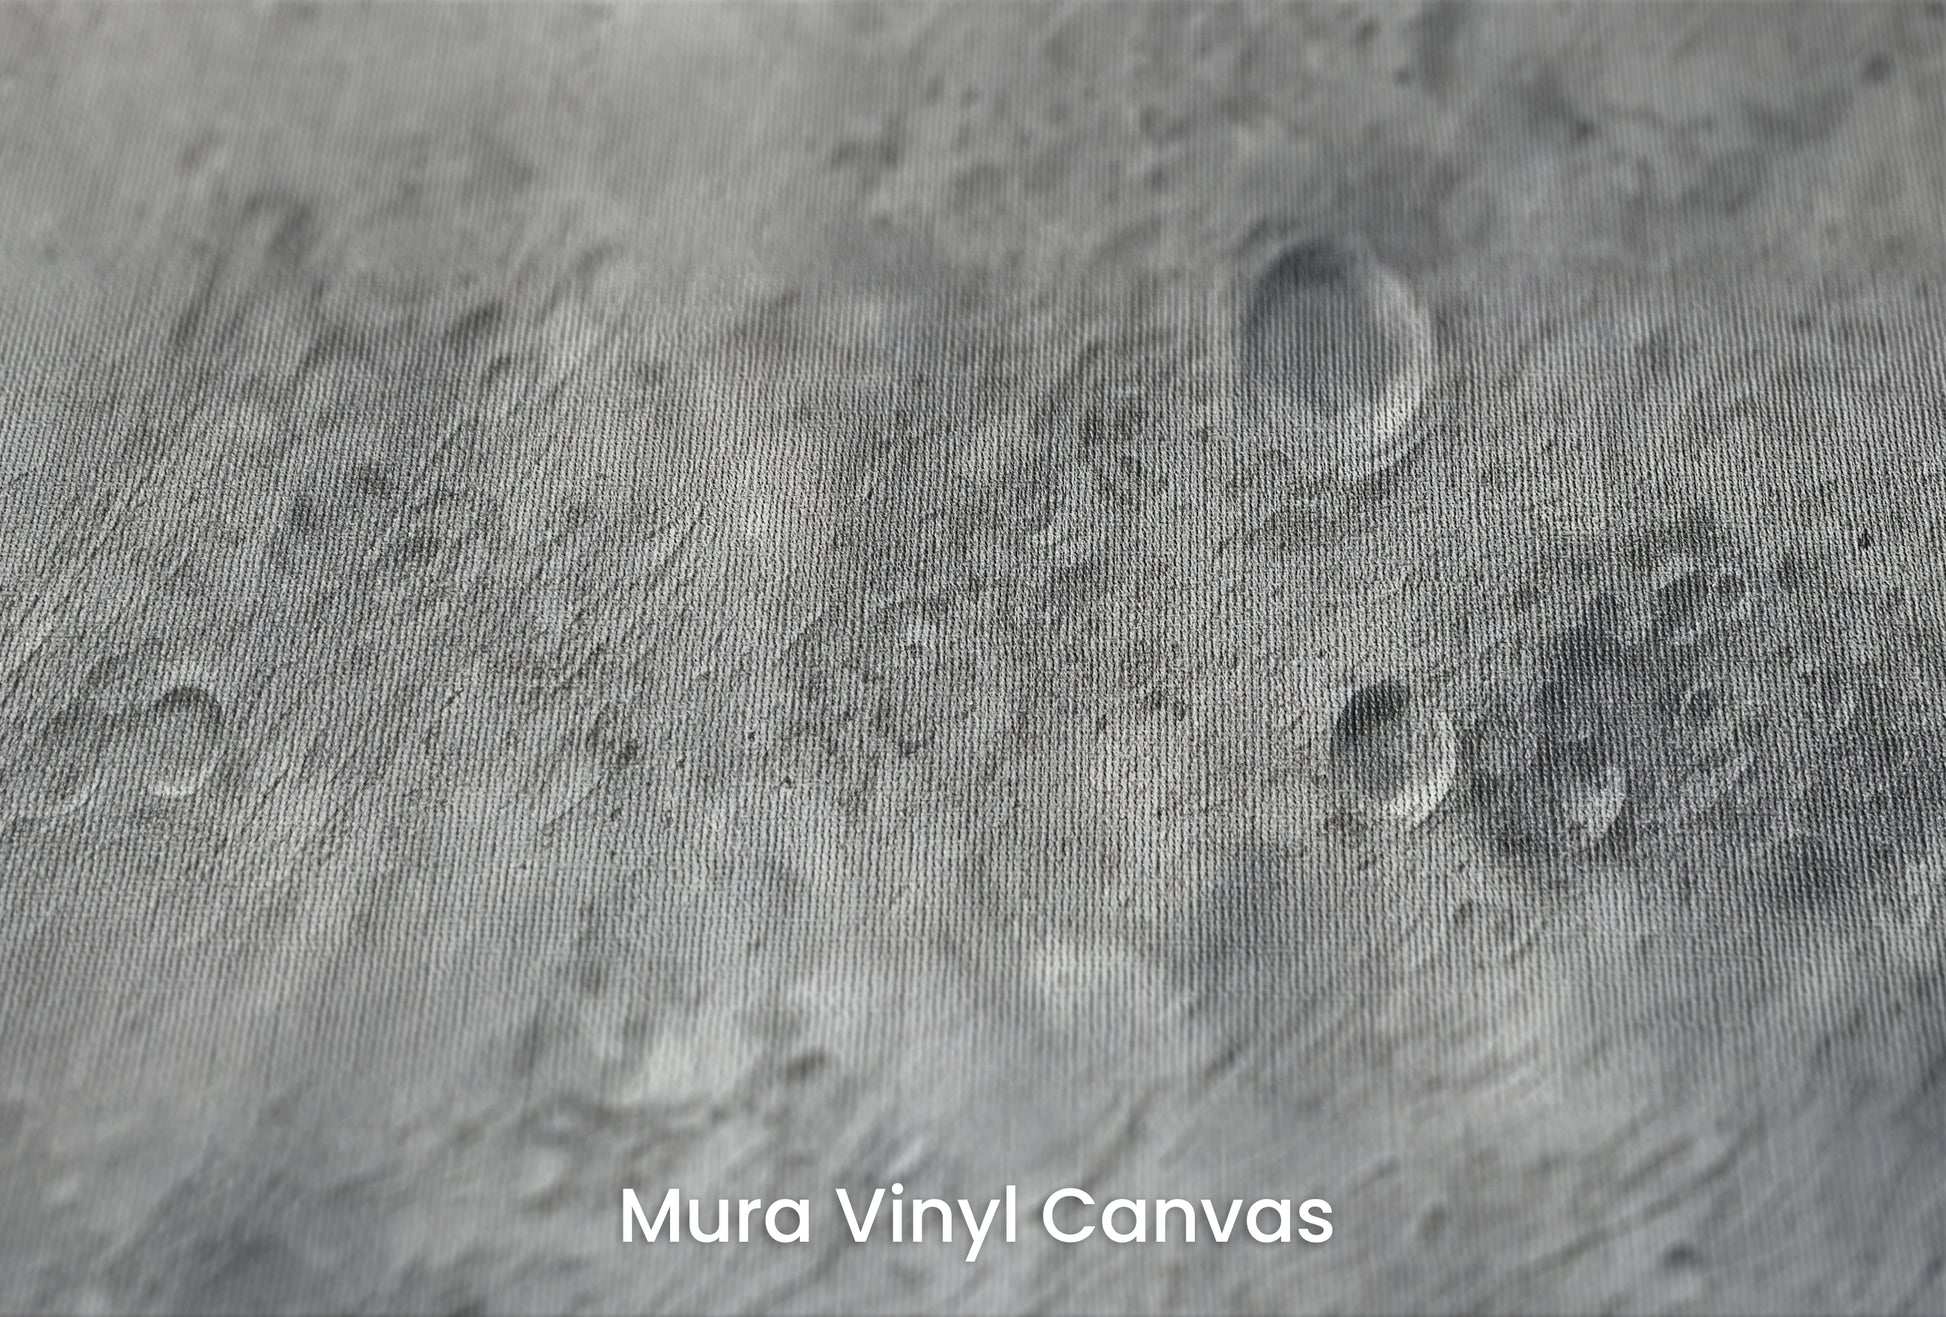 Zbliżenie na artystyczną fototapetę o nazwie Lunar Majesty na podłożu Mura Vinyl Canvas - faktura naturalnego płótna.